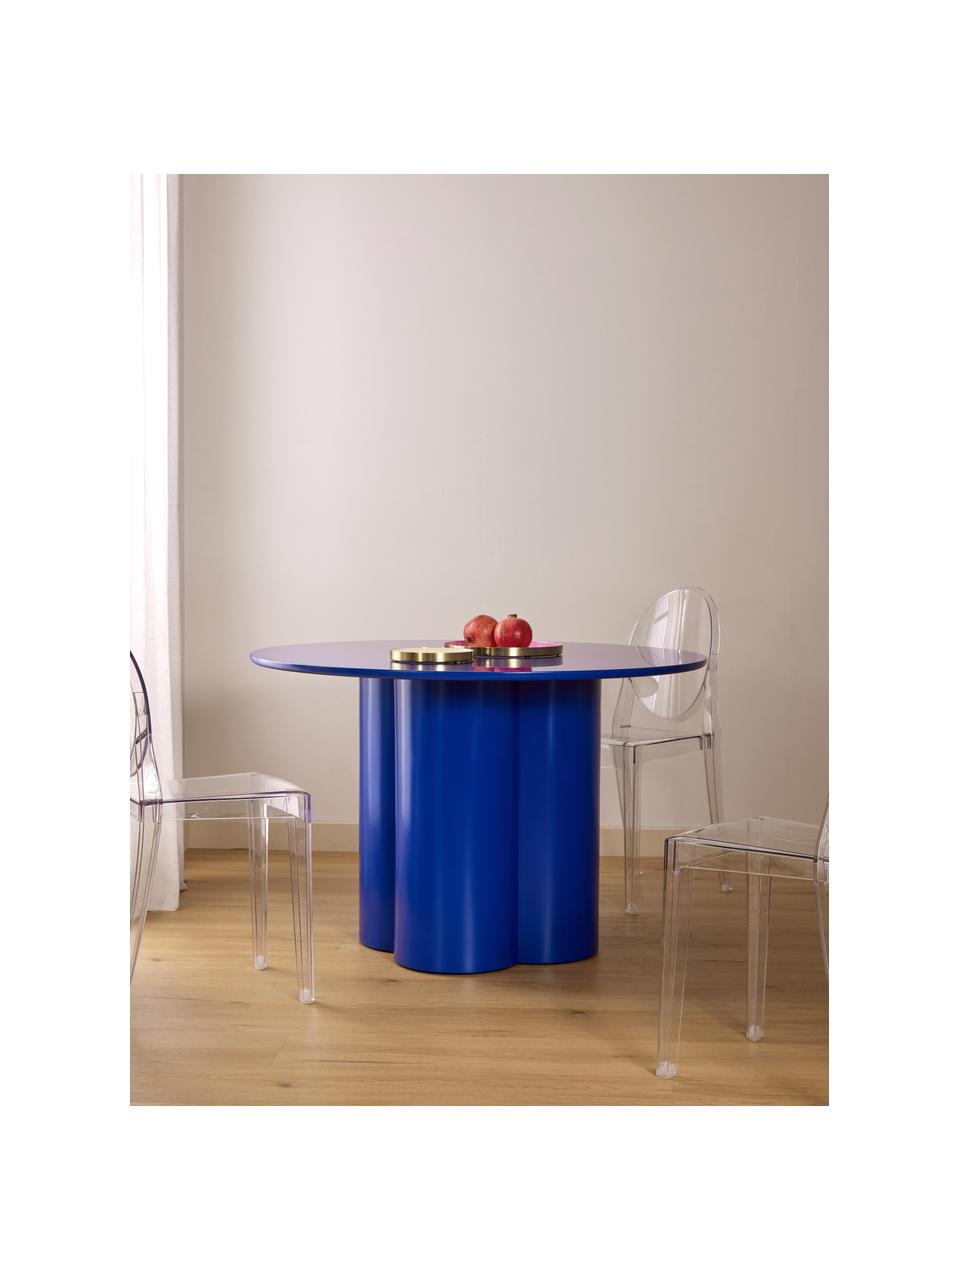 Kulatý jídelní stůl ze dřeva Keva, různé velikosti, MDF deska (dřevovláknitá deska střední hustoty), certifikace FSC, potažená, Královská modrá, Ø 115 cm